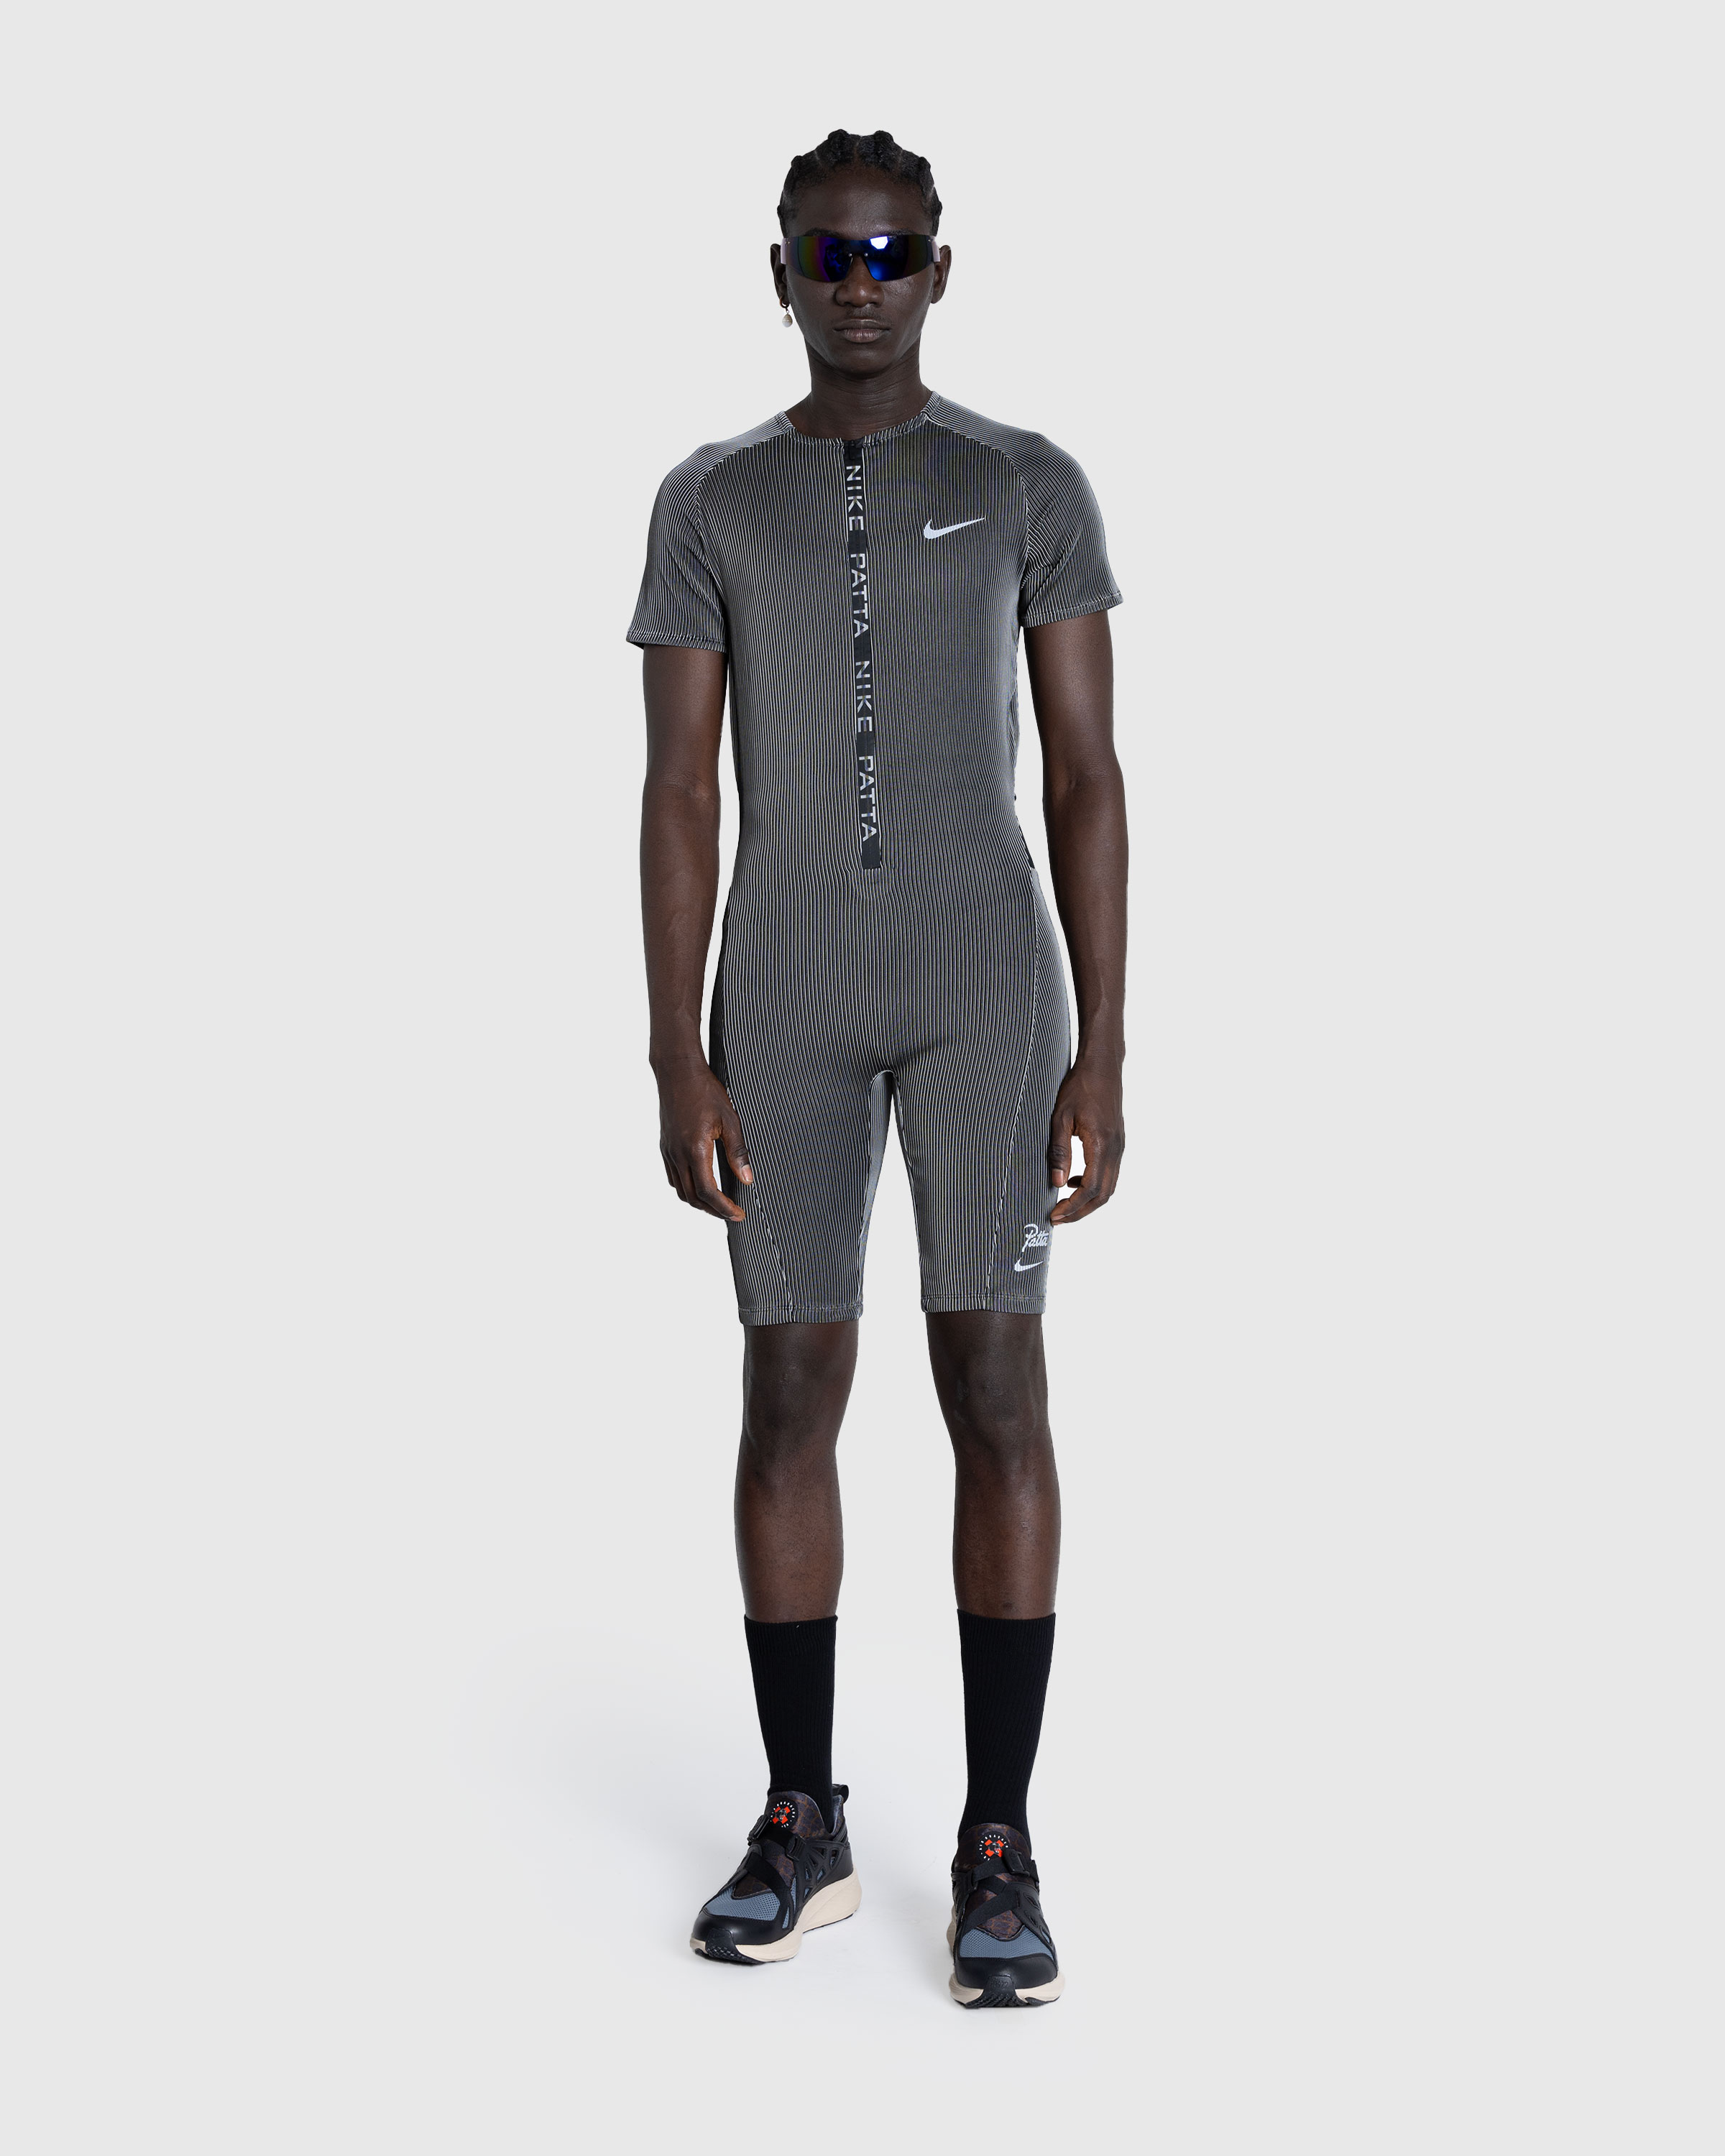 Nike x Patta – U NRG Nike x Patta Race Suit Black - Overshirt - Black - Image 2